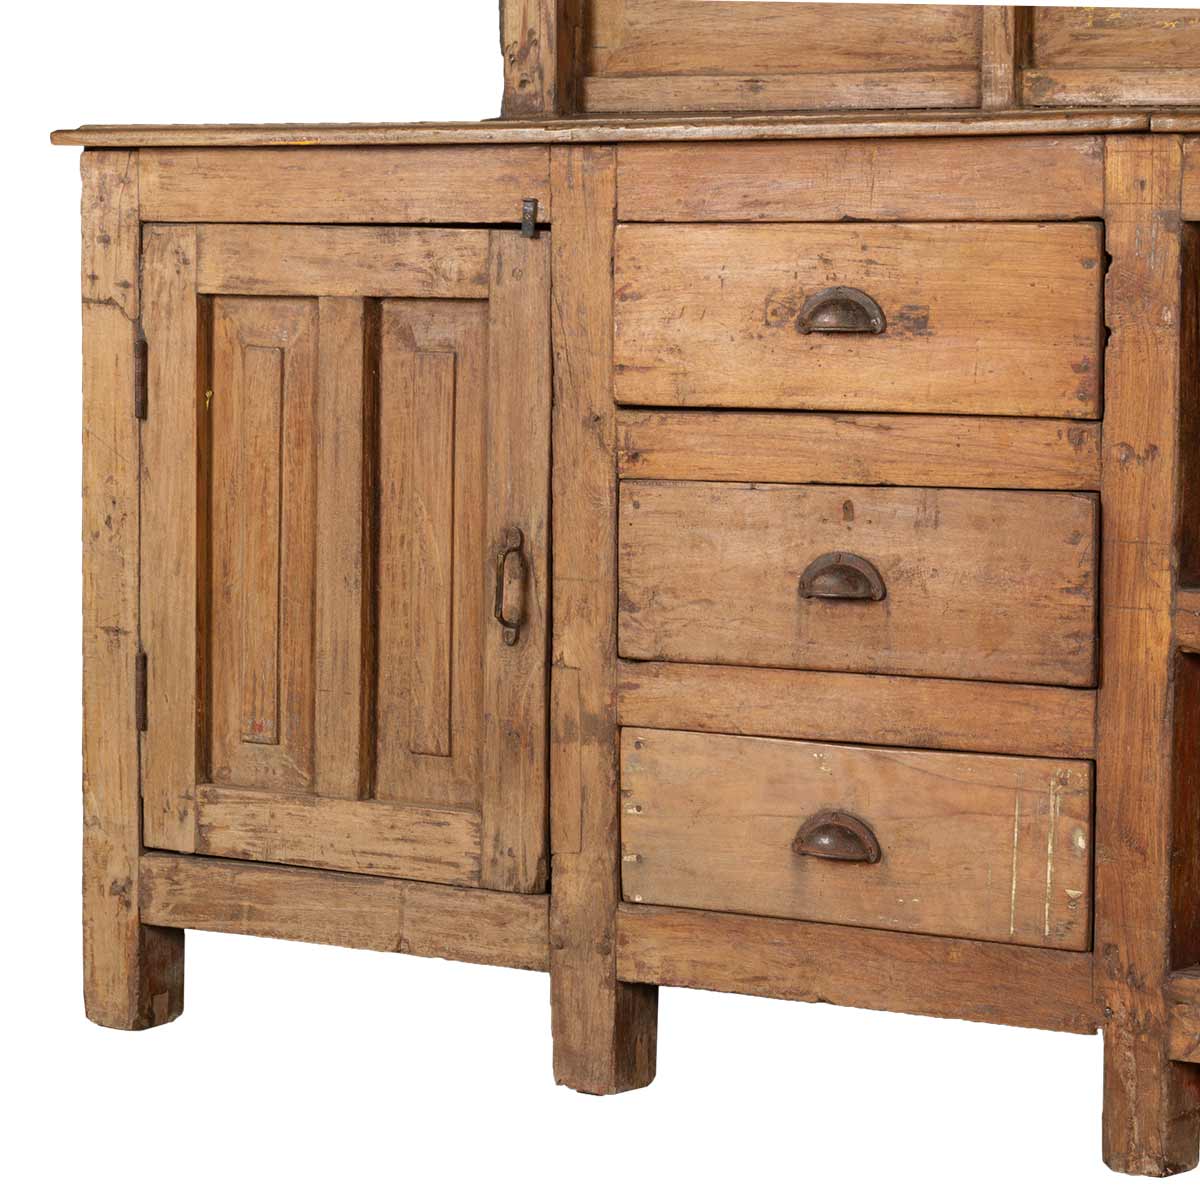 Detallado Continental realimentación Muebles antiguos de madera maciza.